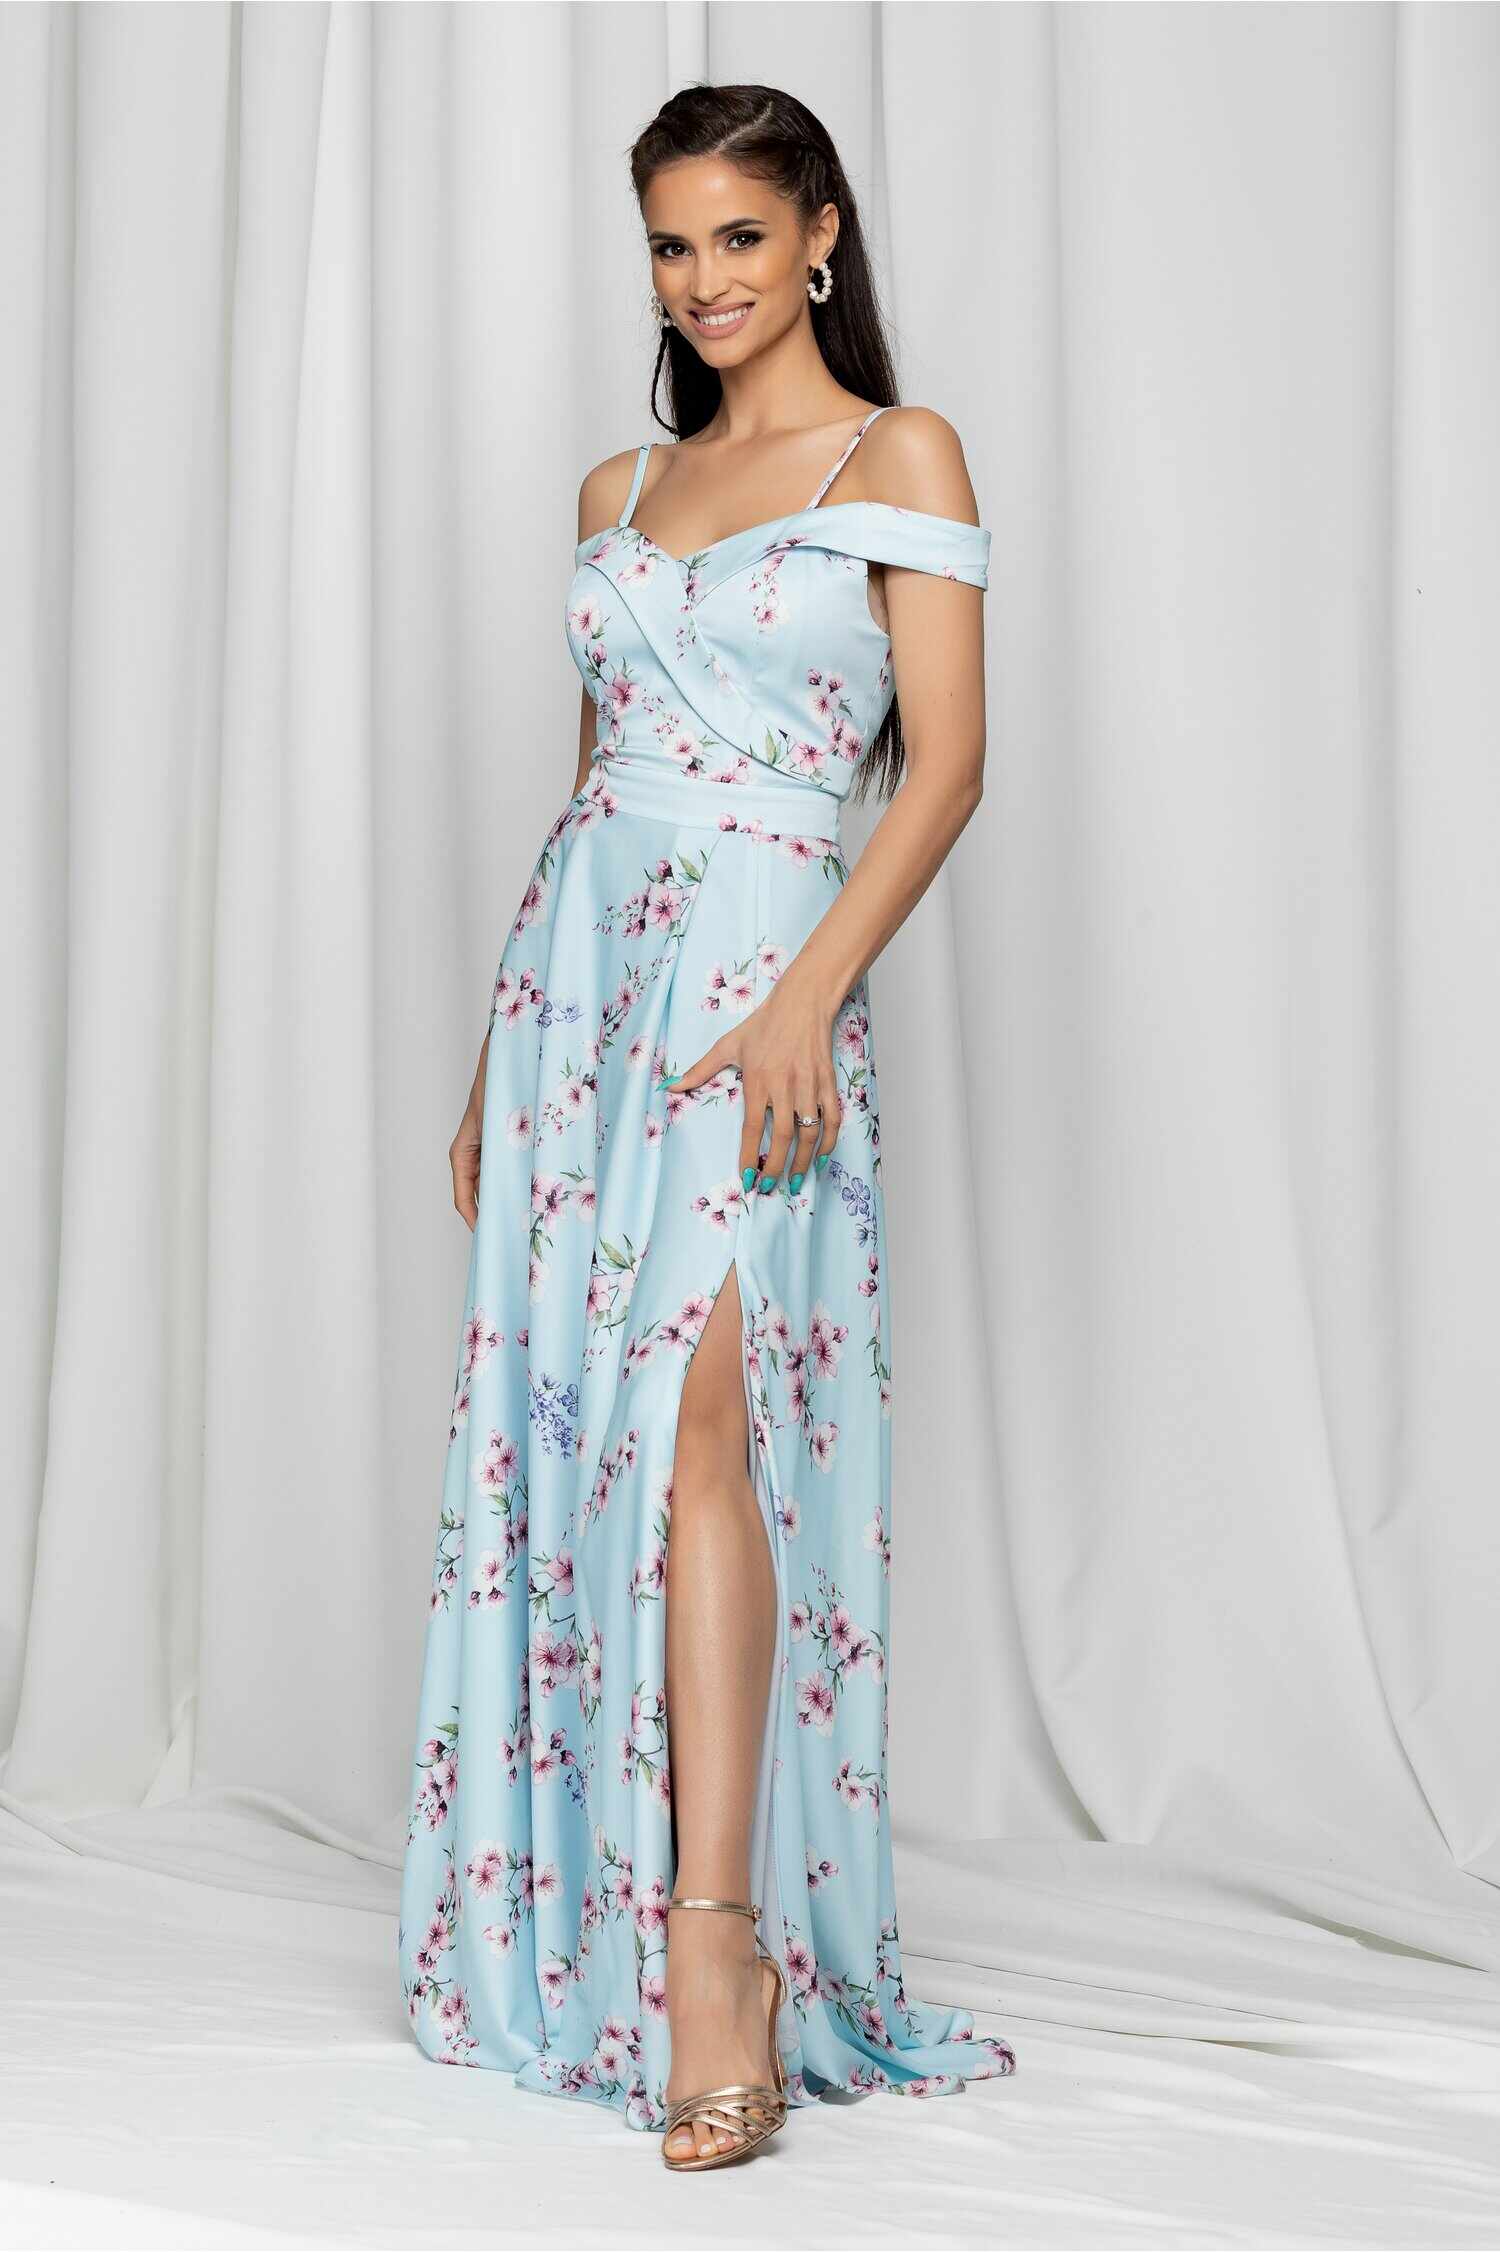 Rochie Ariana bleu lunga cu imprimeu floral